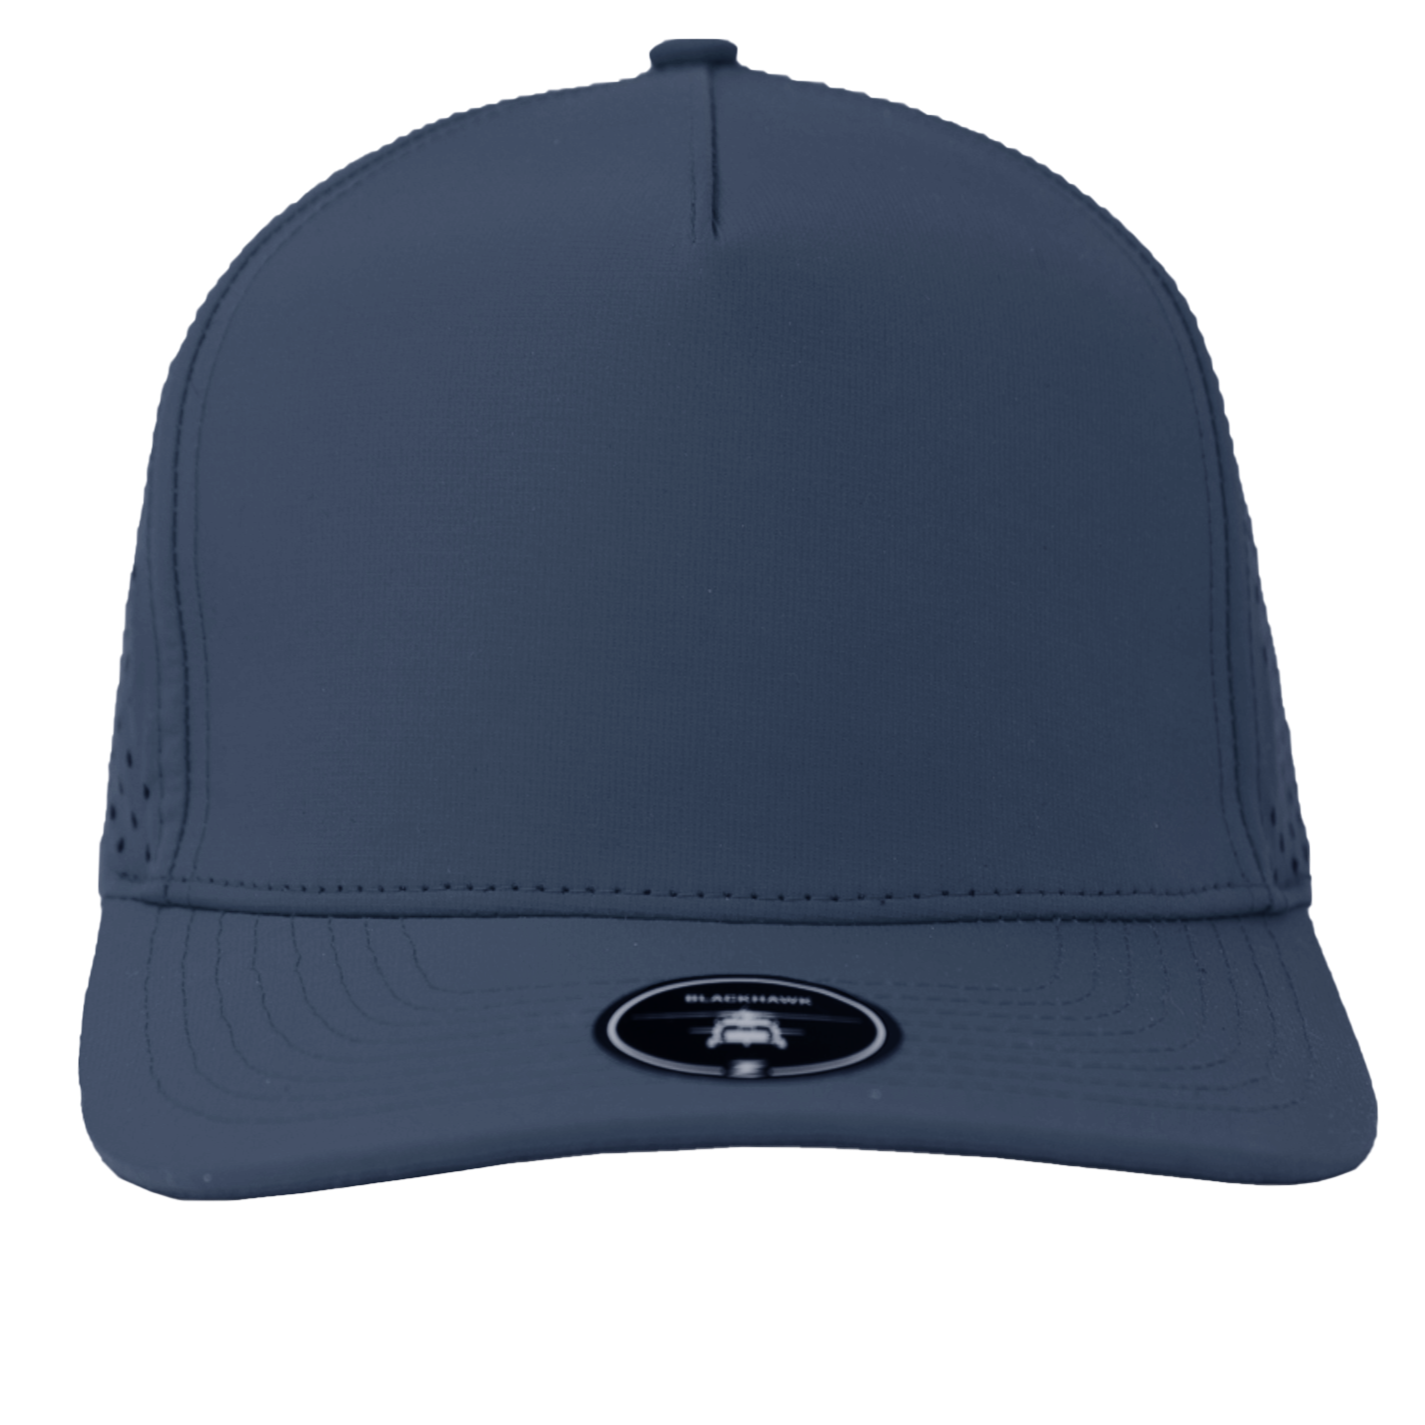 BLACKHAWK-Water Repellent hat-Zapped Headwear-light-navy-Zapped Headwear